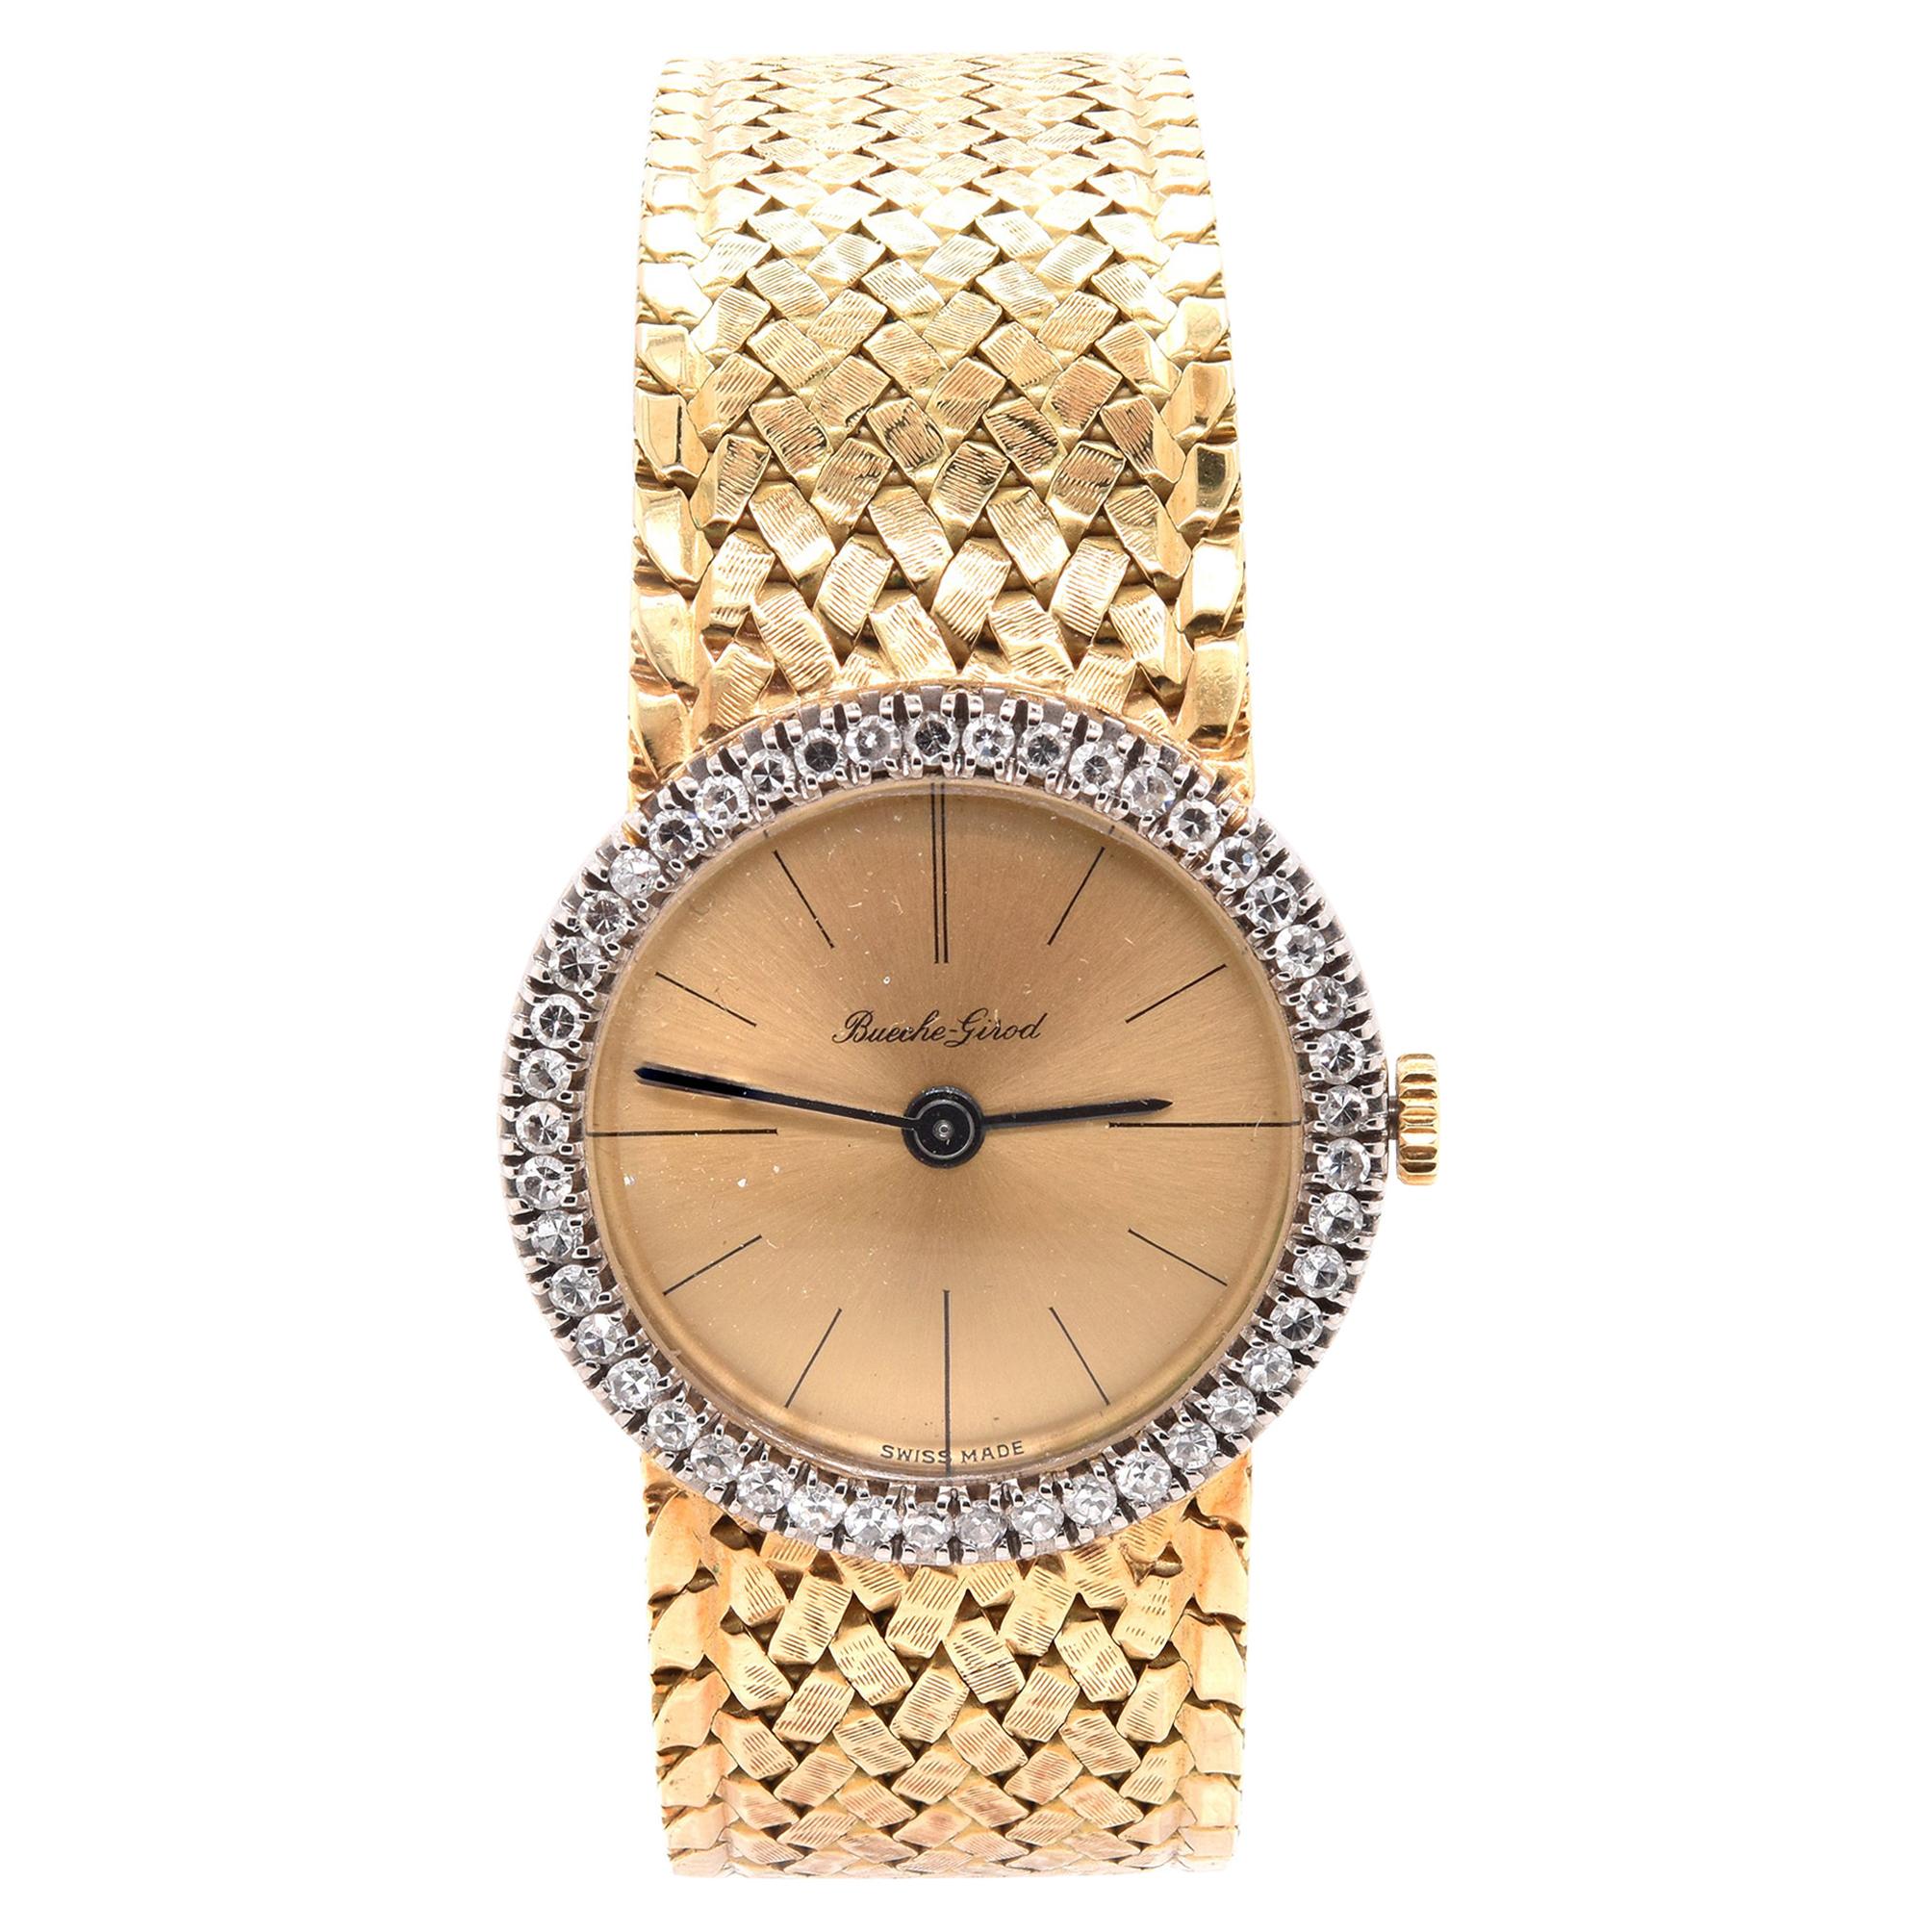 Vintage Damen-Diamant-Uhr von Bouche Girod aus 18 Karat Gelbgold